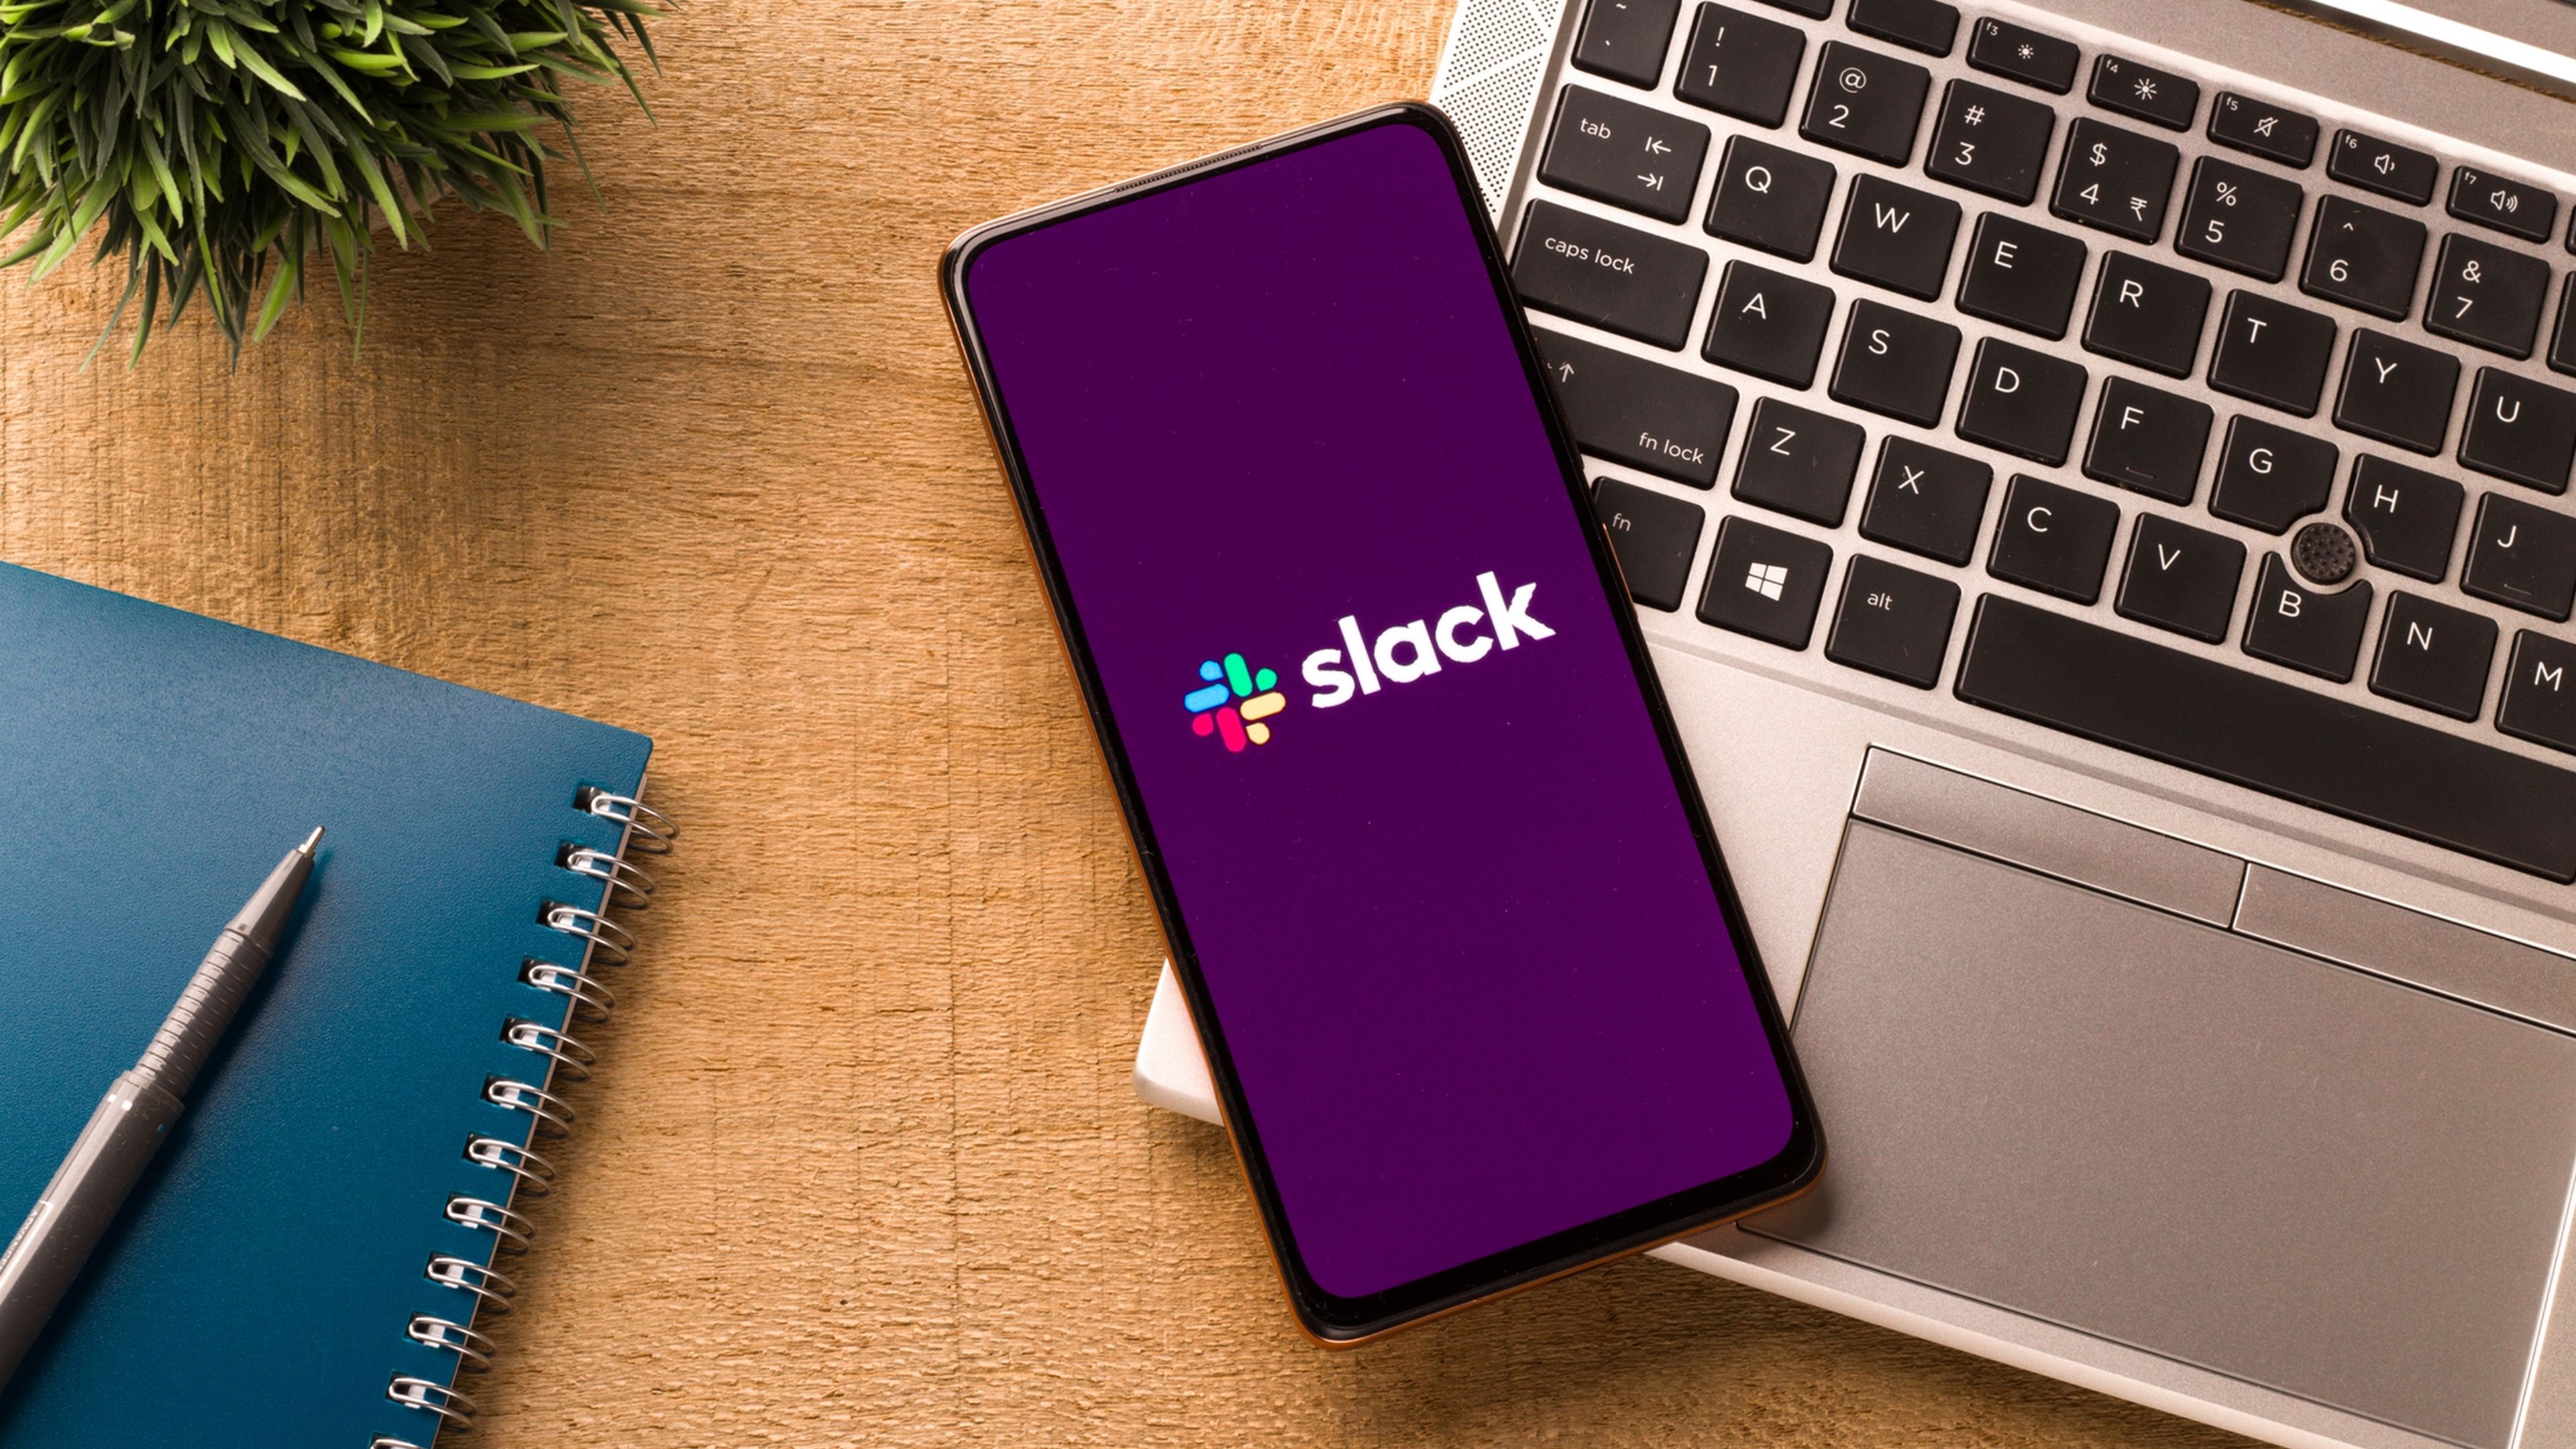 Slack ha estado usando los mensajes privados de sus usuarios, para entrenar a su IA